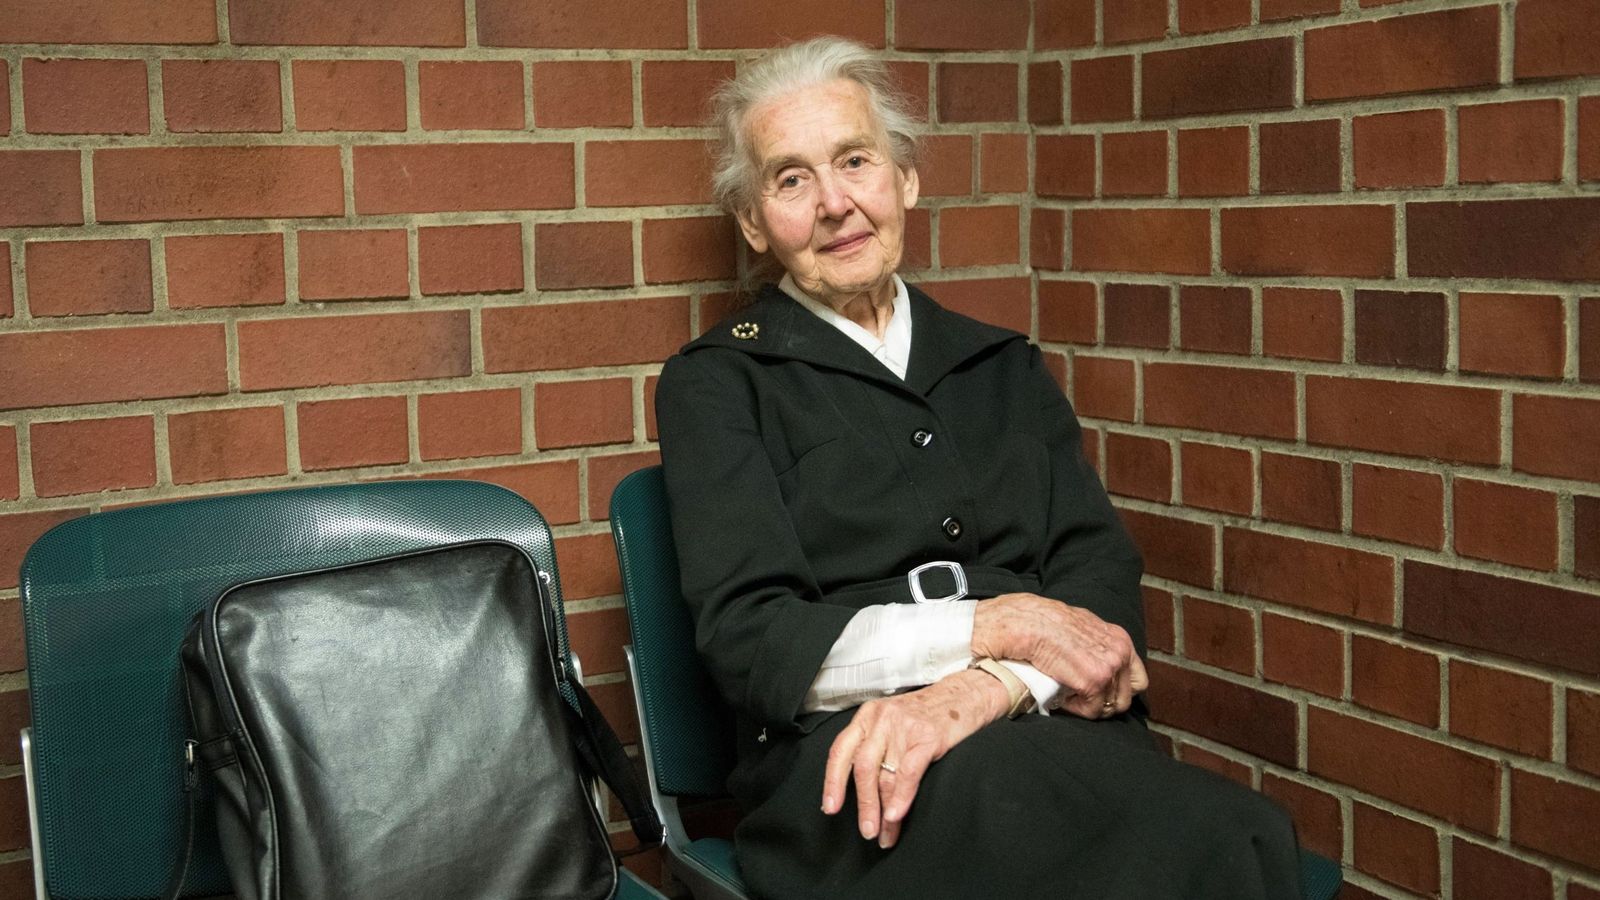 Foto: Ursula Haverbeck, la 'abuela nazi', condenada a prisión | EFE